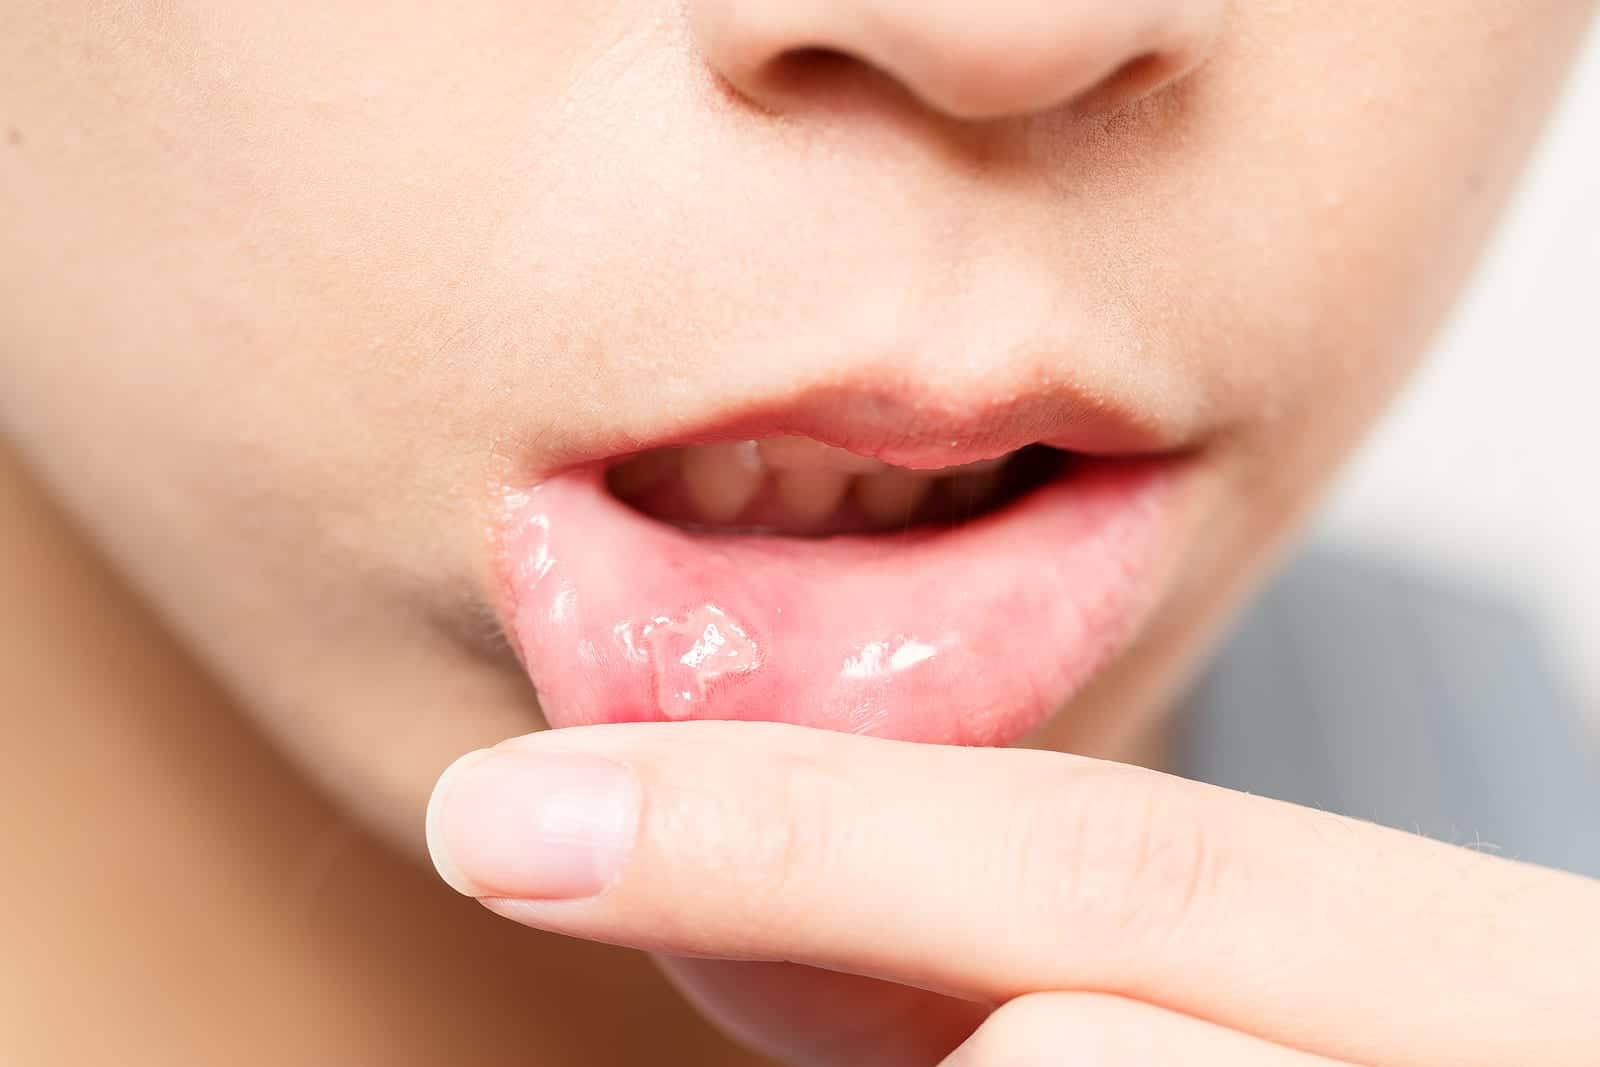 هل صحيح أن قرح الفم تنتقل عن طريق القبلة؟ ها هو التفسير!